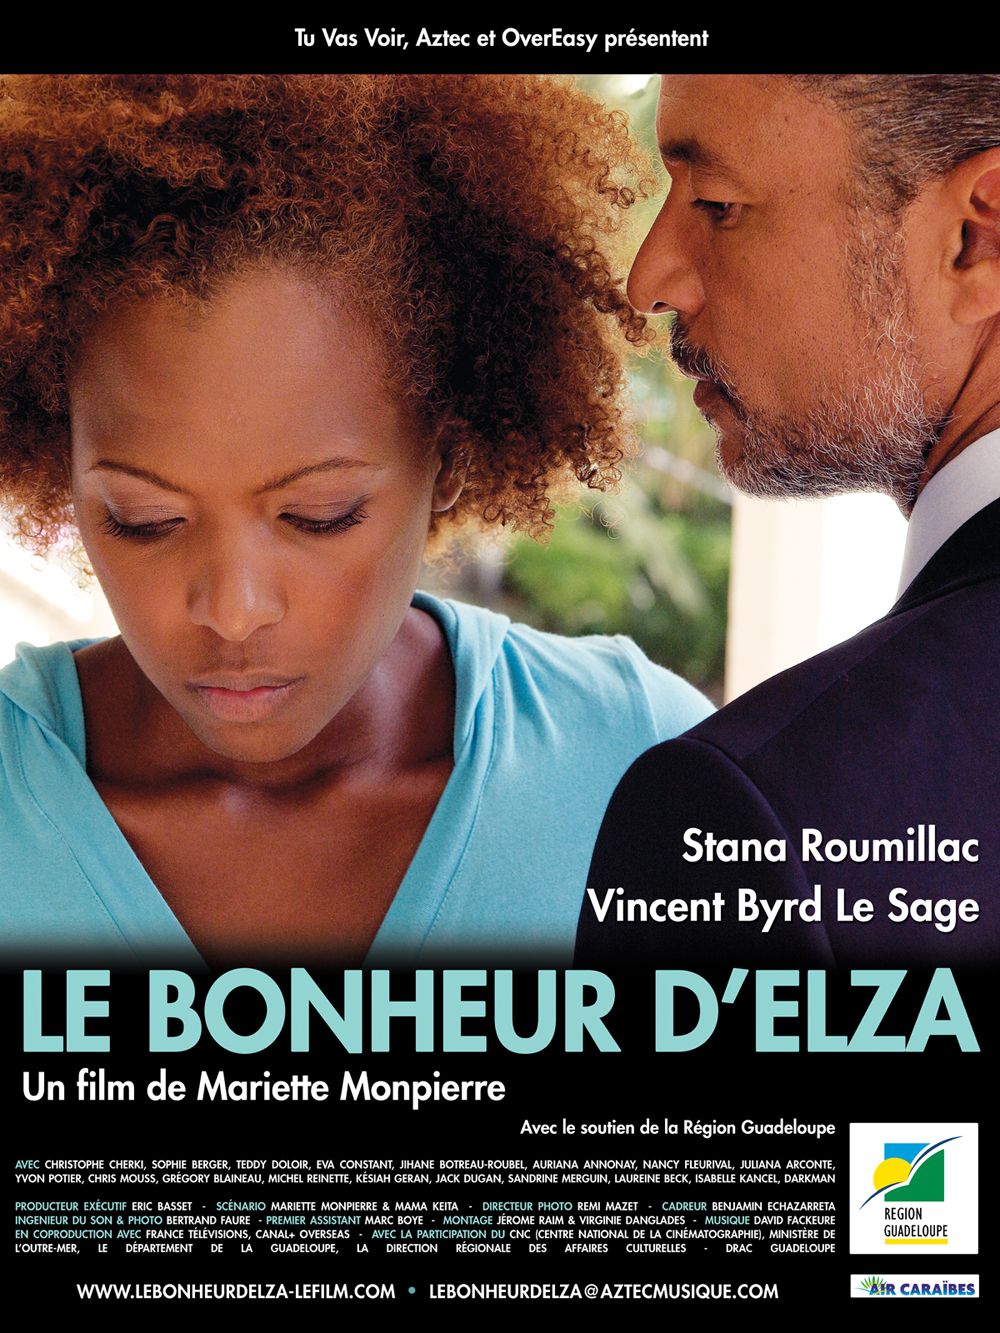 Le Bonheur D Apprendre Et Comment On L Assassine Le bonheur d'Elza - Film (2011) - SensCritique